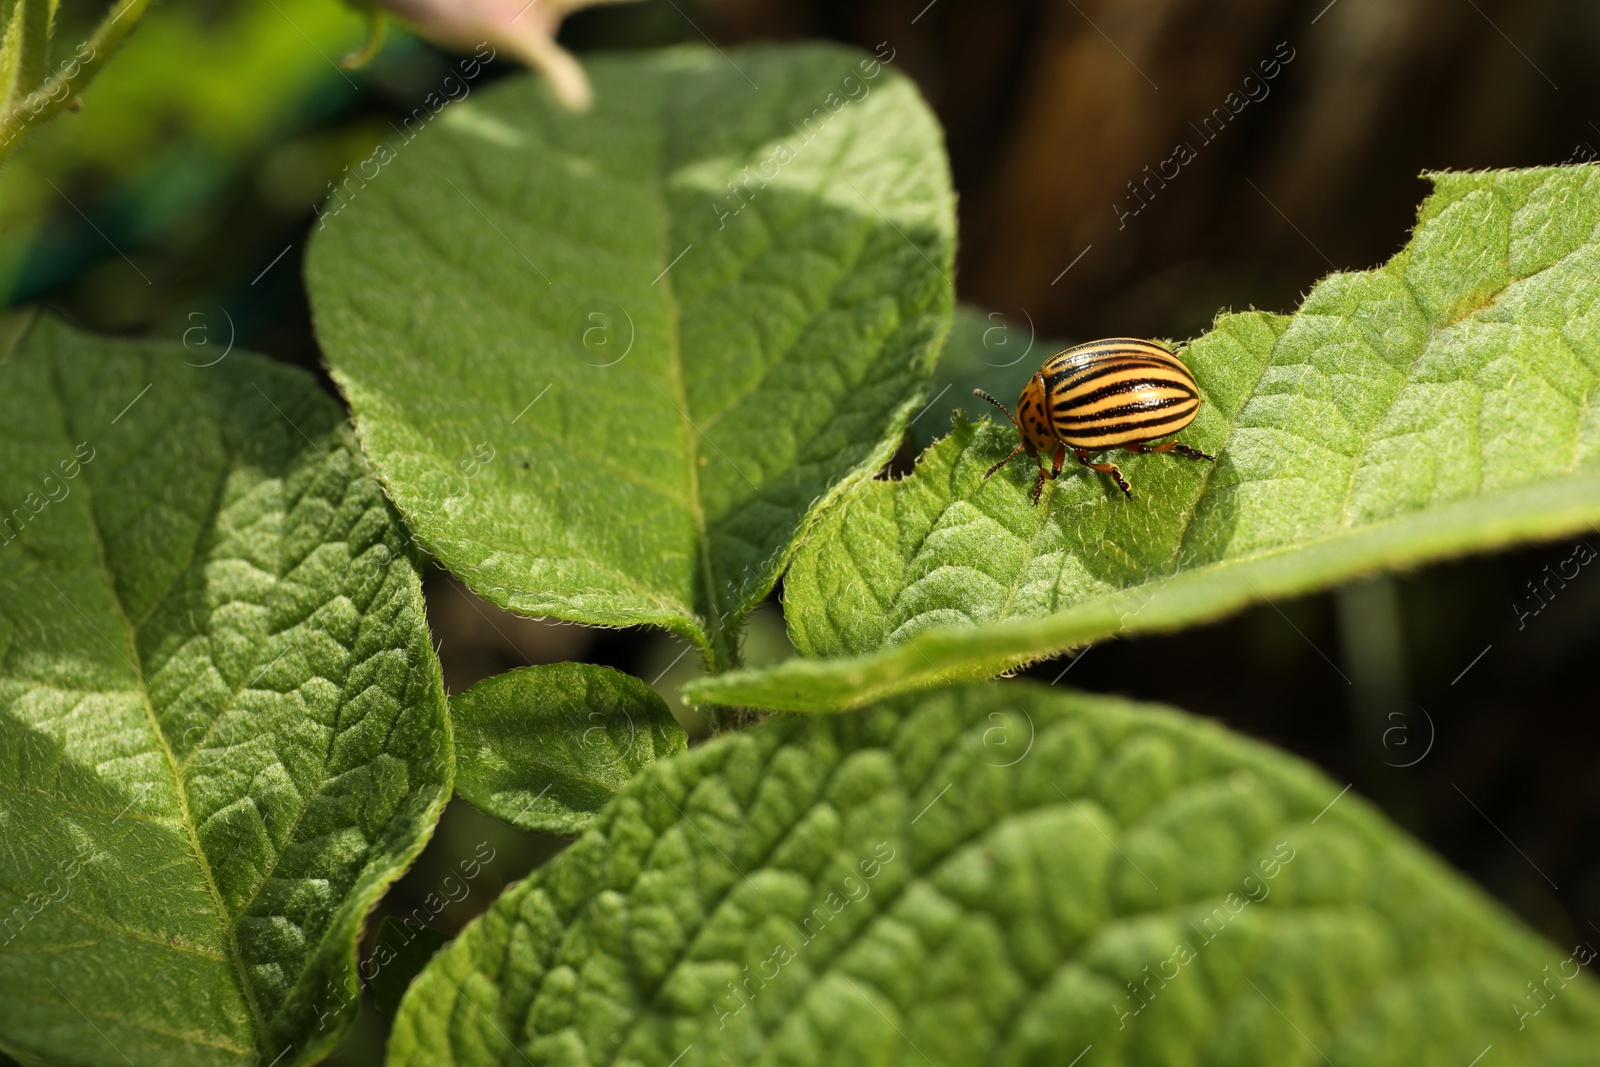 Photo of Colorado potato beetle on green plant outdoors, closeup